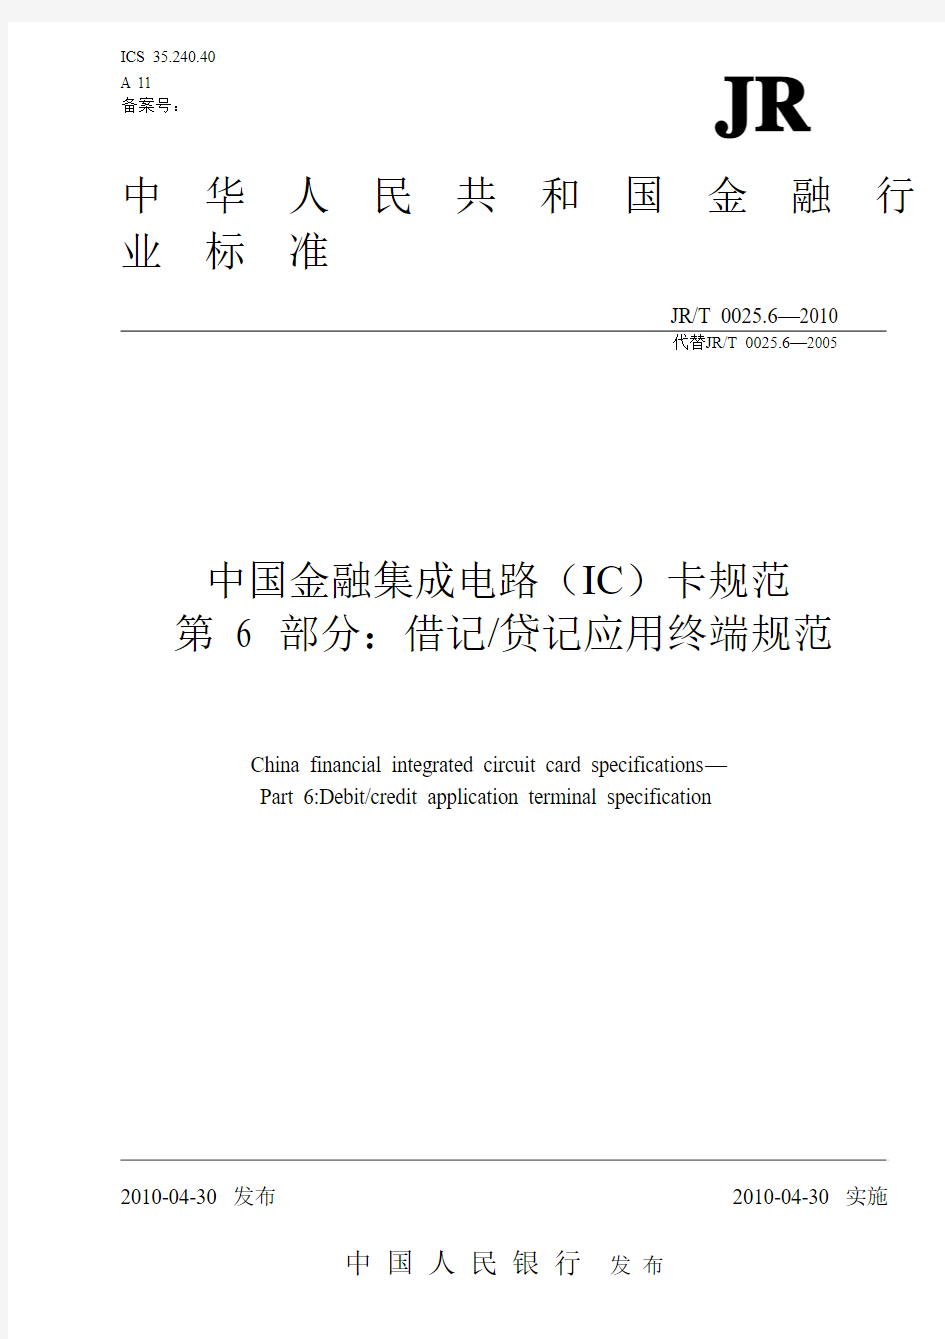 中国金融集成电路(IC)卡规范第6部(20100513)